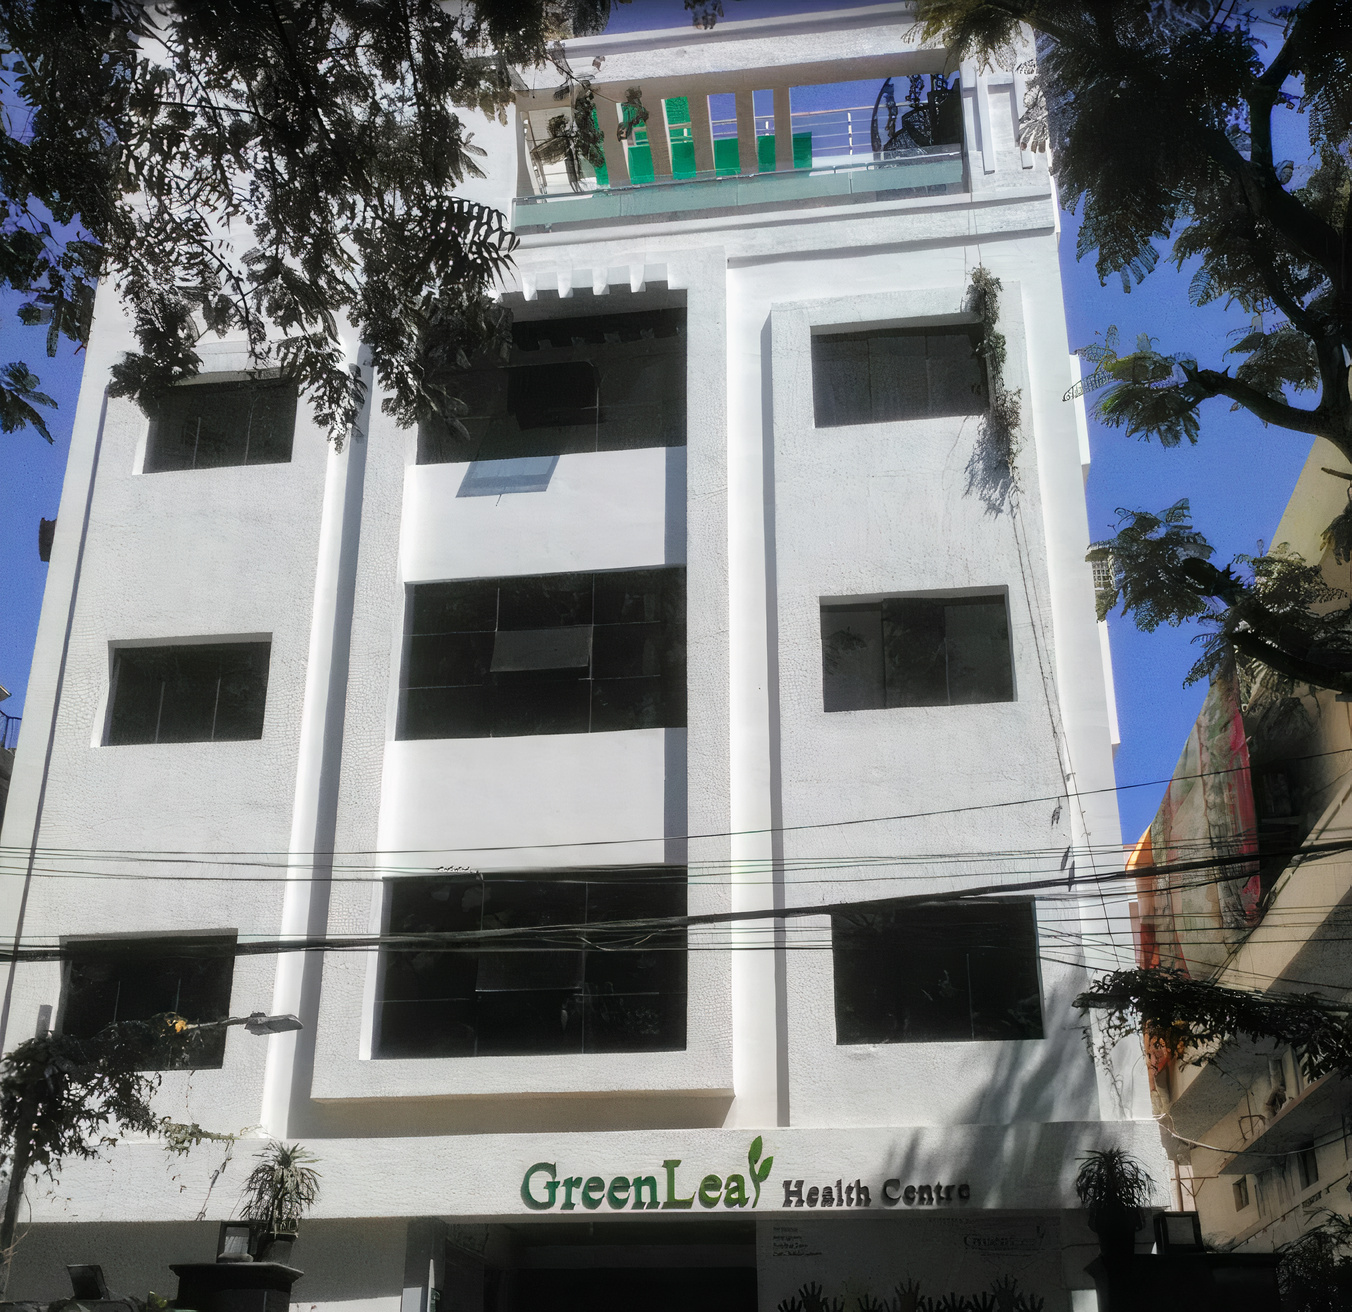 Greenleaf Health Centre